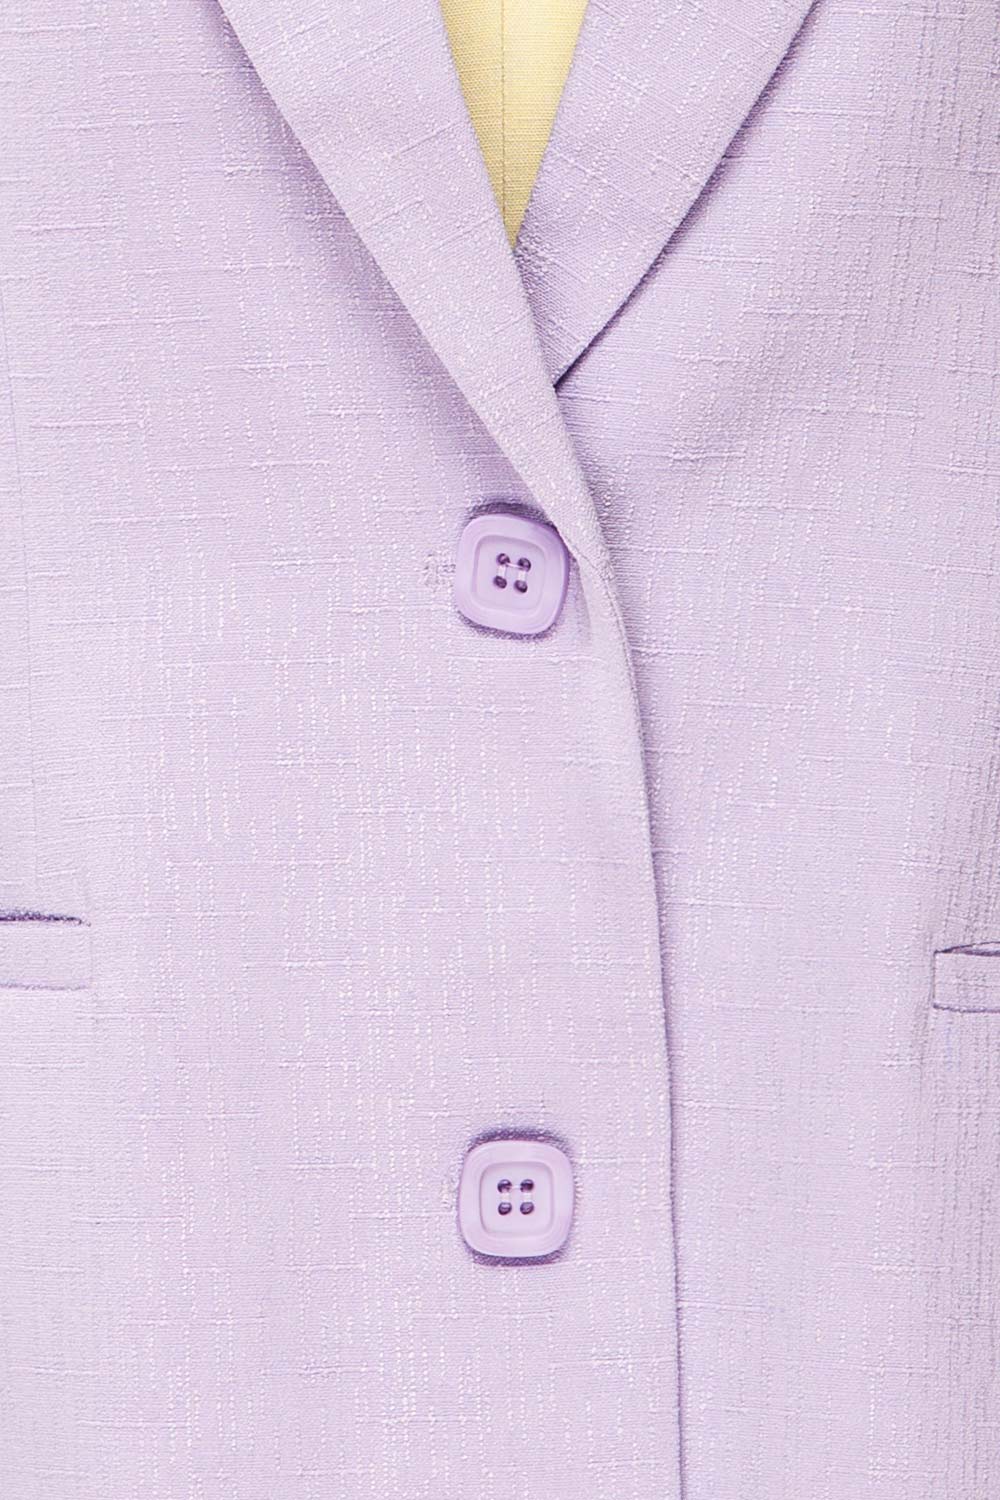 McMurray Lilac Textured Blazer w/ Square Buttons | La petite garçonne fabric 